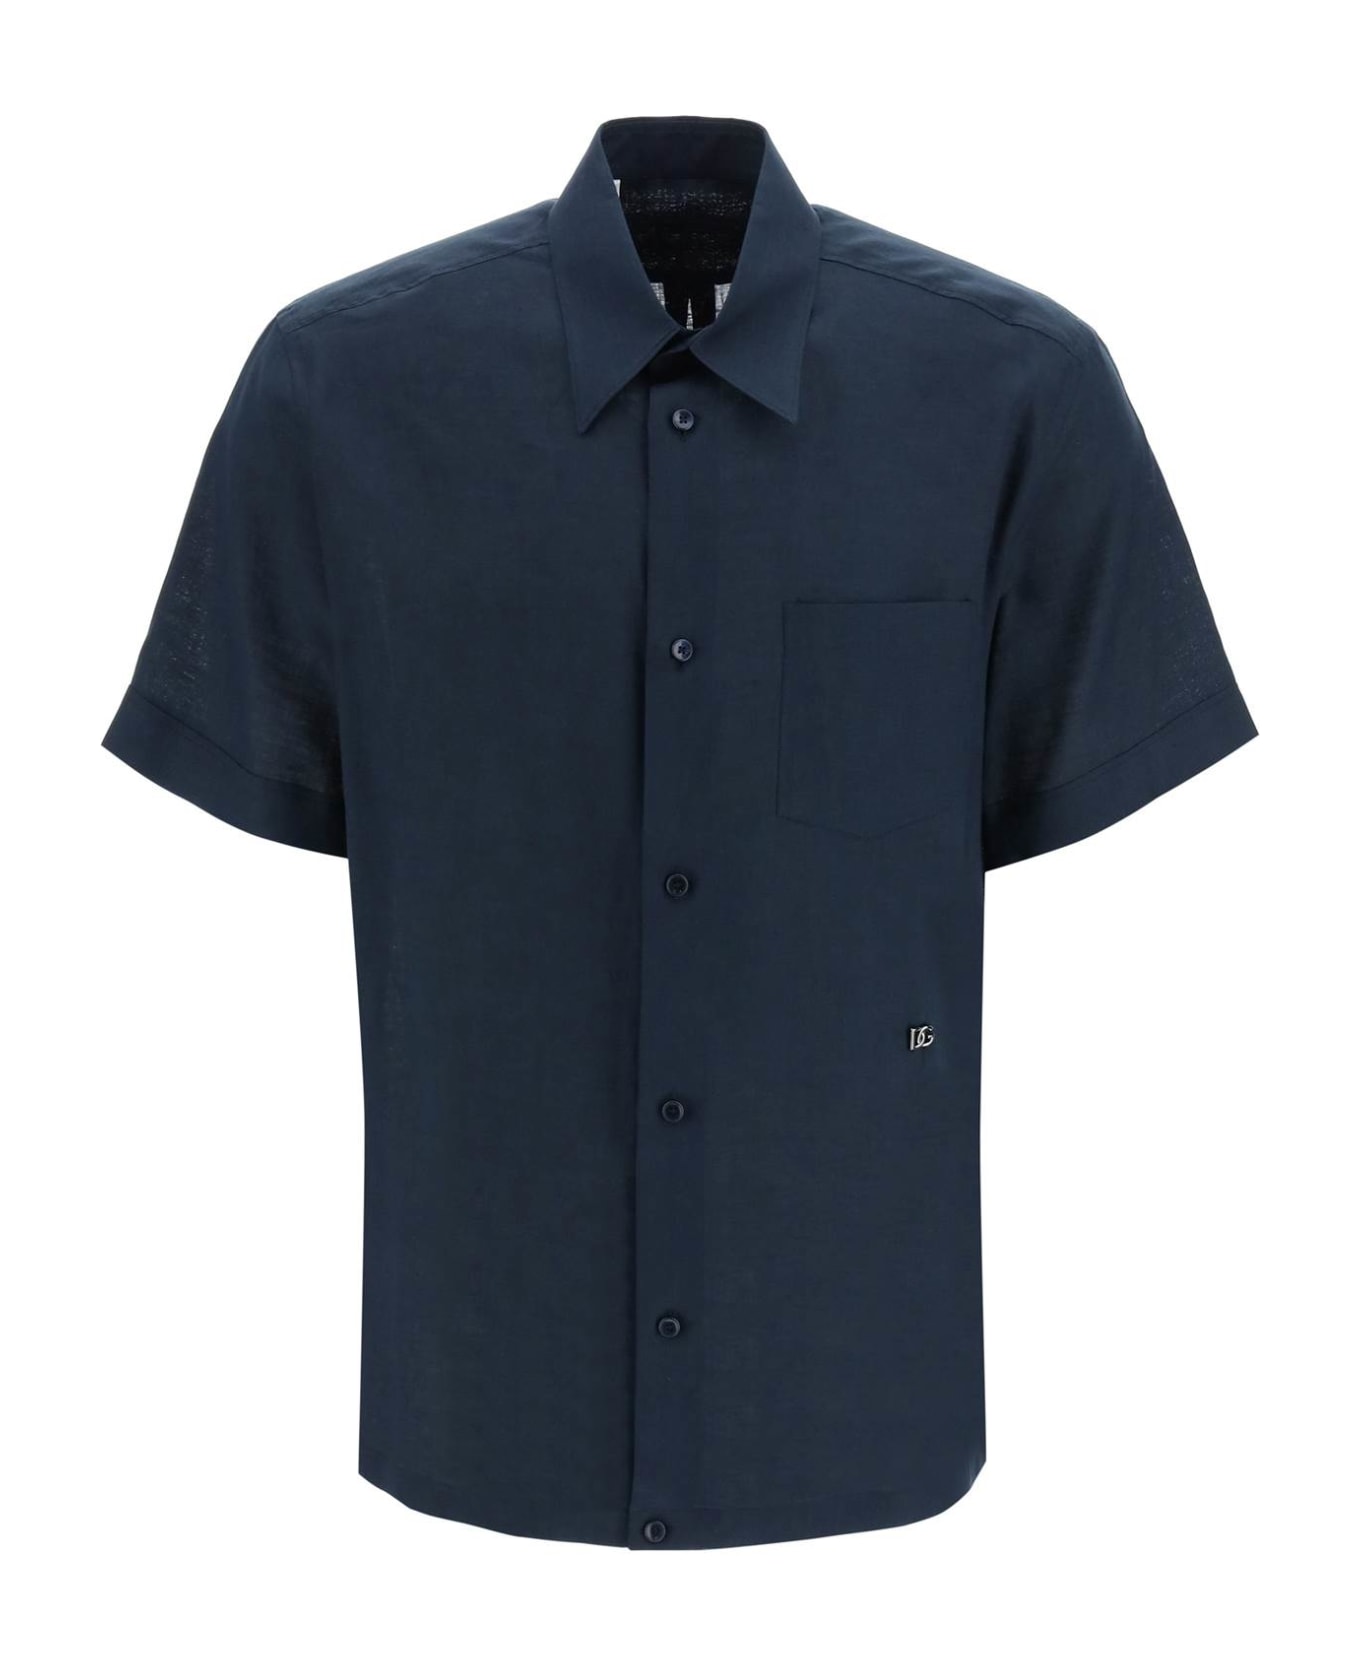 Dolce & Gabbana Logo Plaque Plain Formal Shirt - PETROLIO SCURISSIMO (Blue)